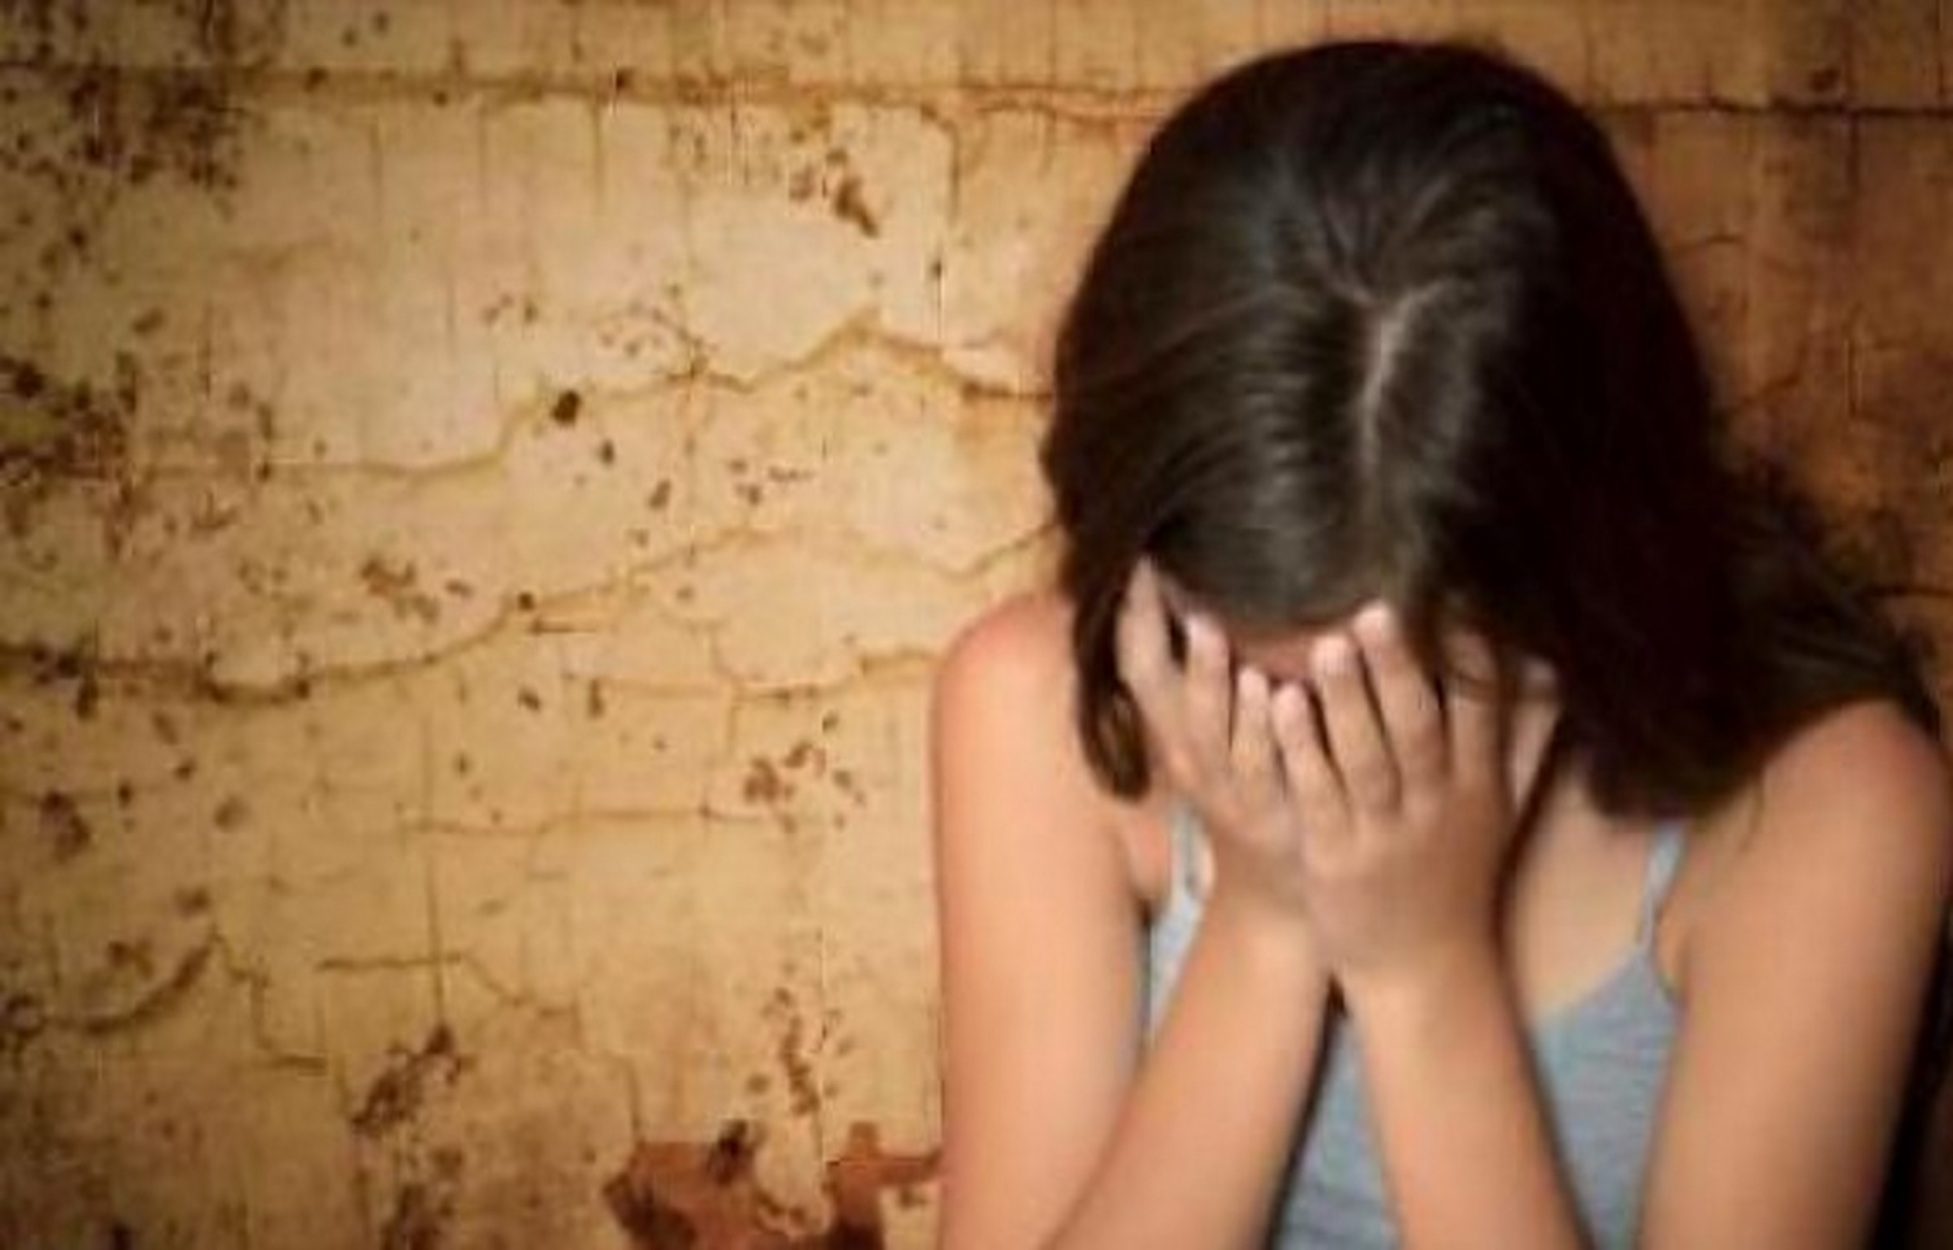 Κύκλωμα μαστροπείας που παγιδεύει κορίτσια και τα προωθεί σε πλούσια πρόσωπα ερευνά η Εισαγγελία για το βιασμό στη Θεσσαλονίκη